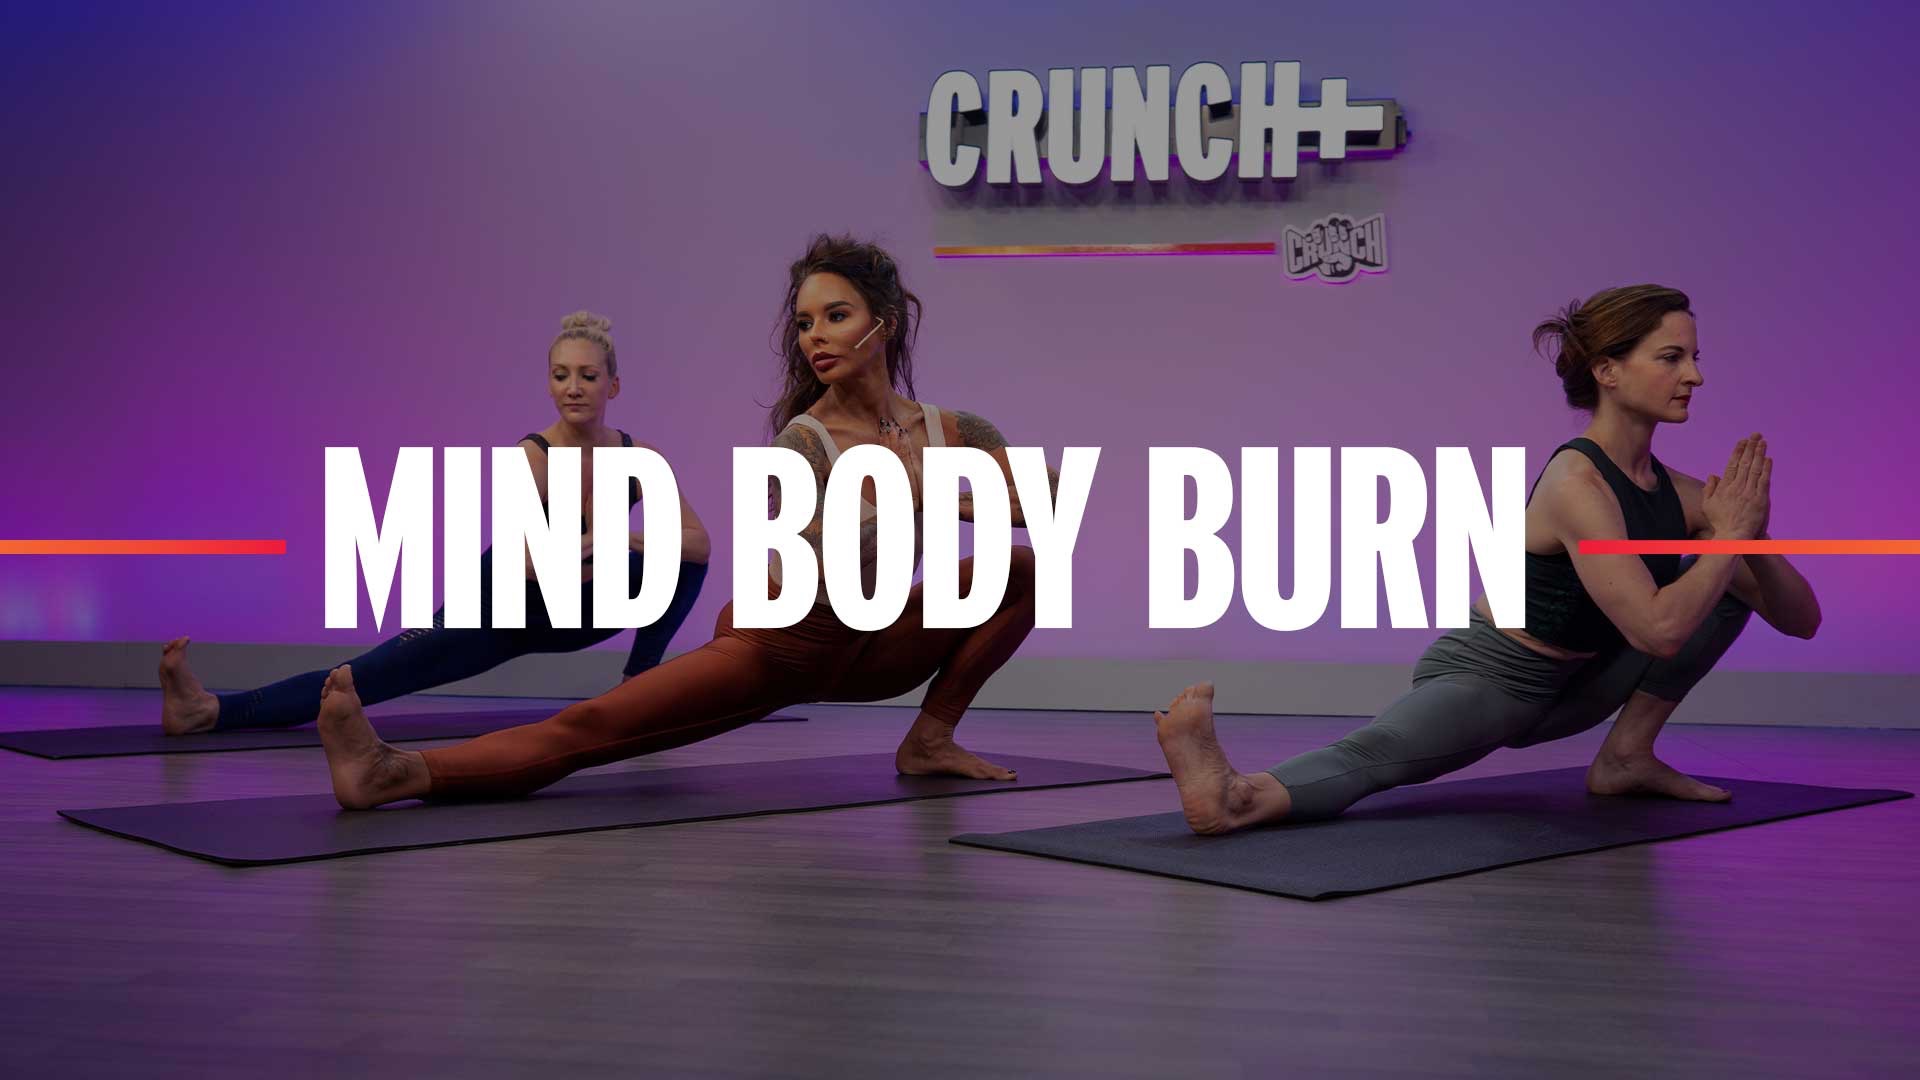 Mind Body Burn by Crunch+